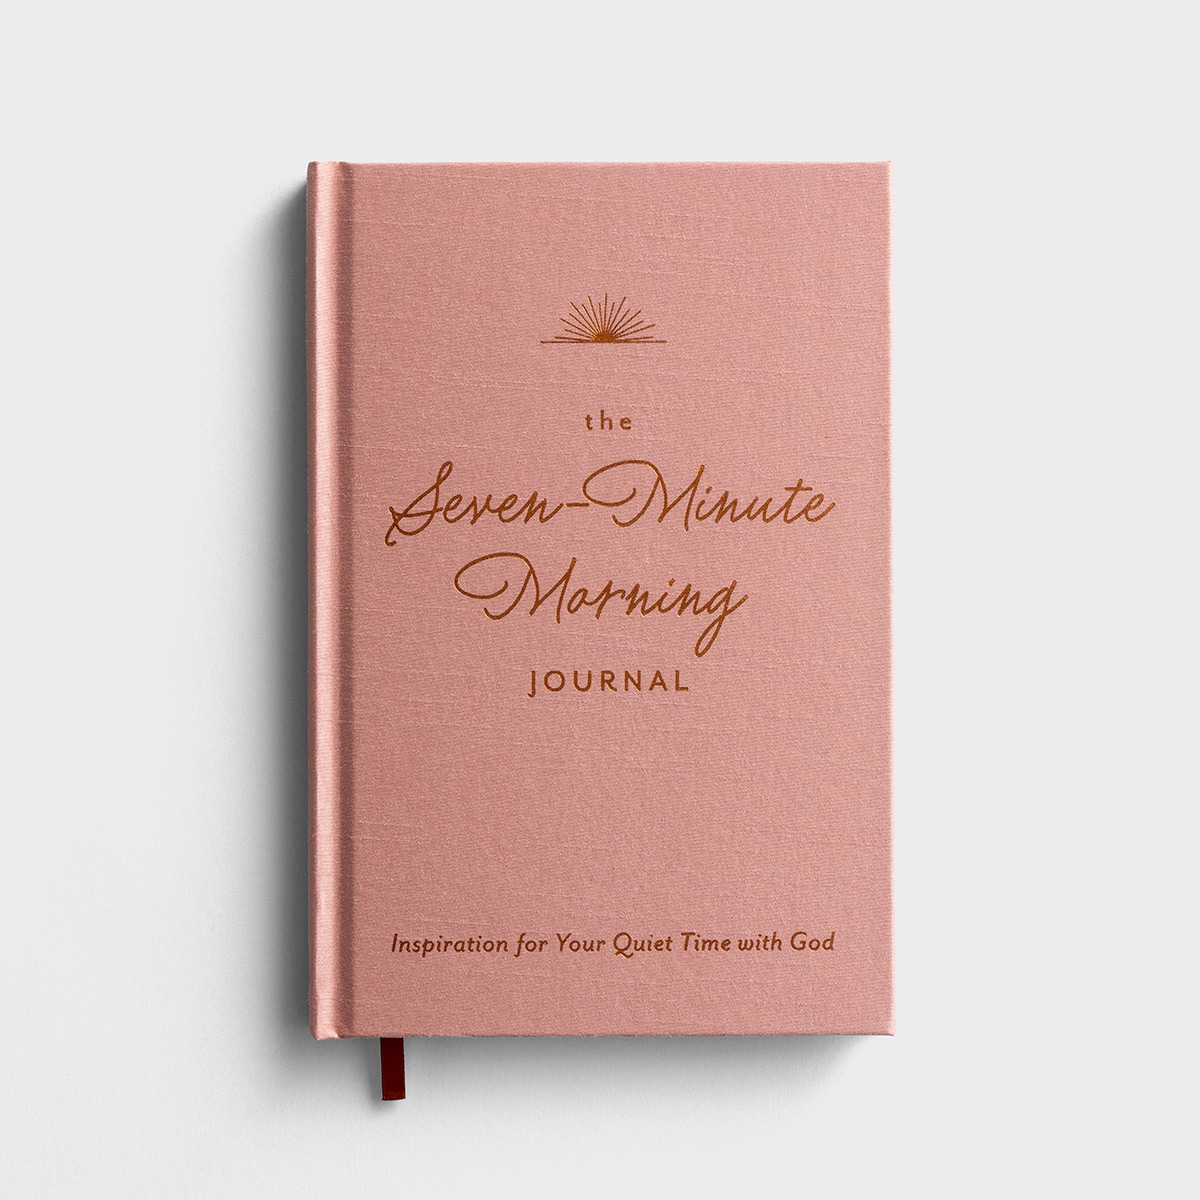 早晨七分钟:与神安静相处的灵感-日记